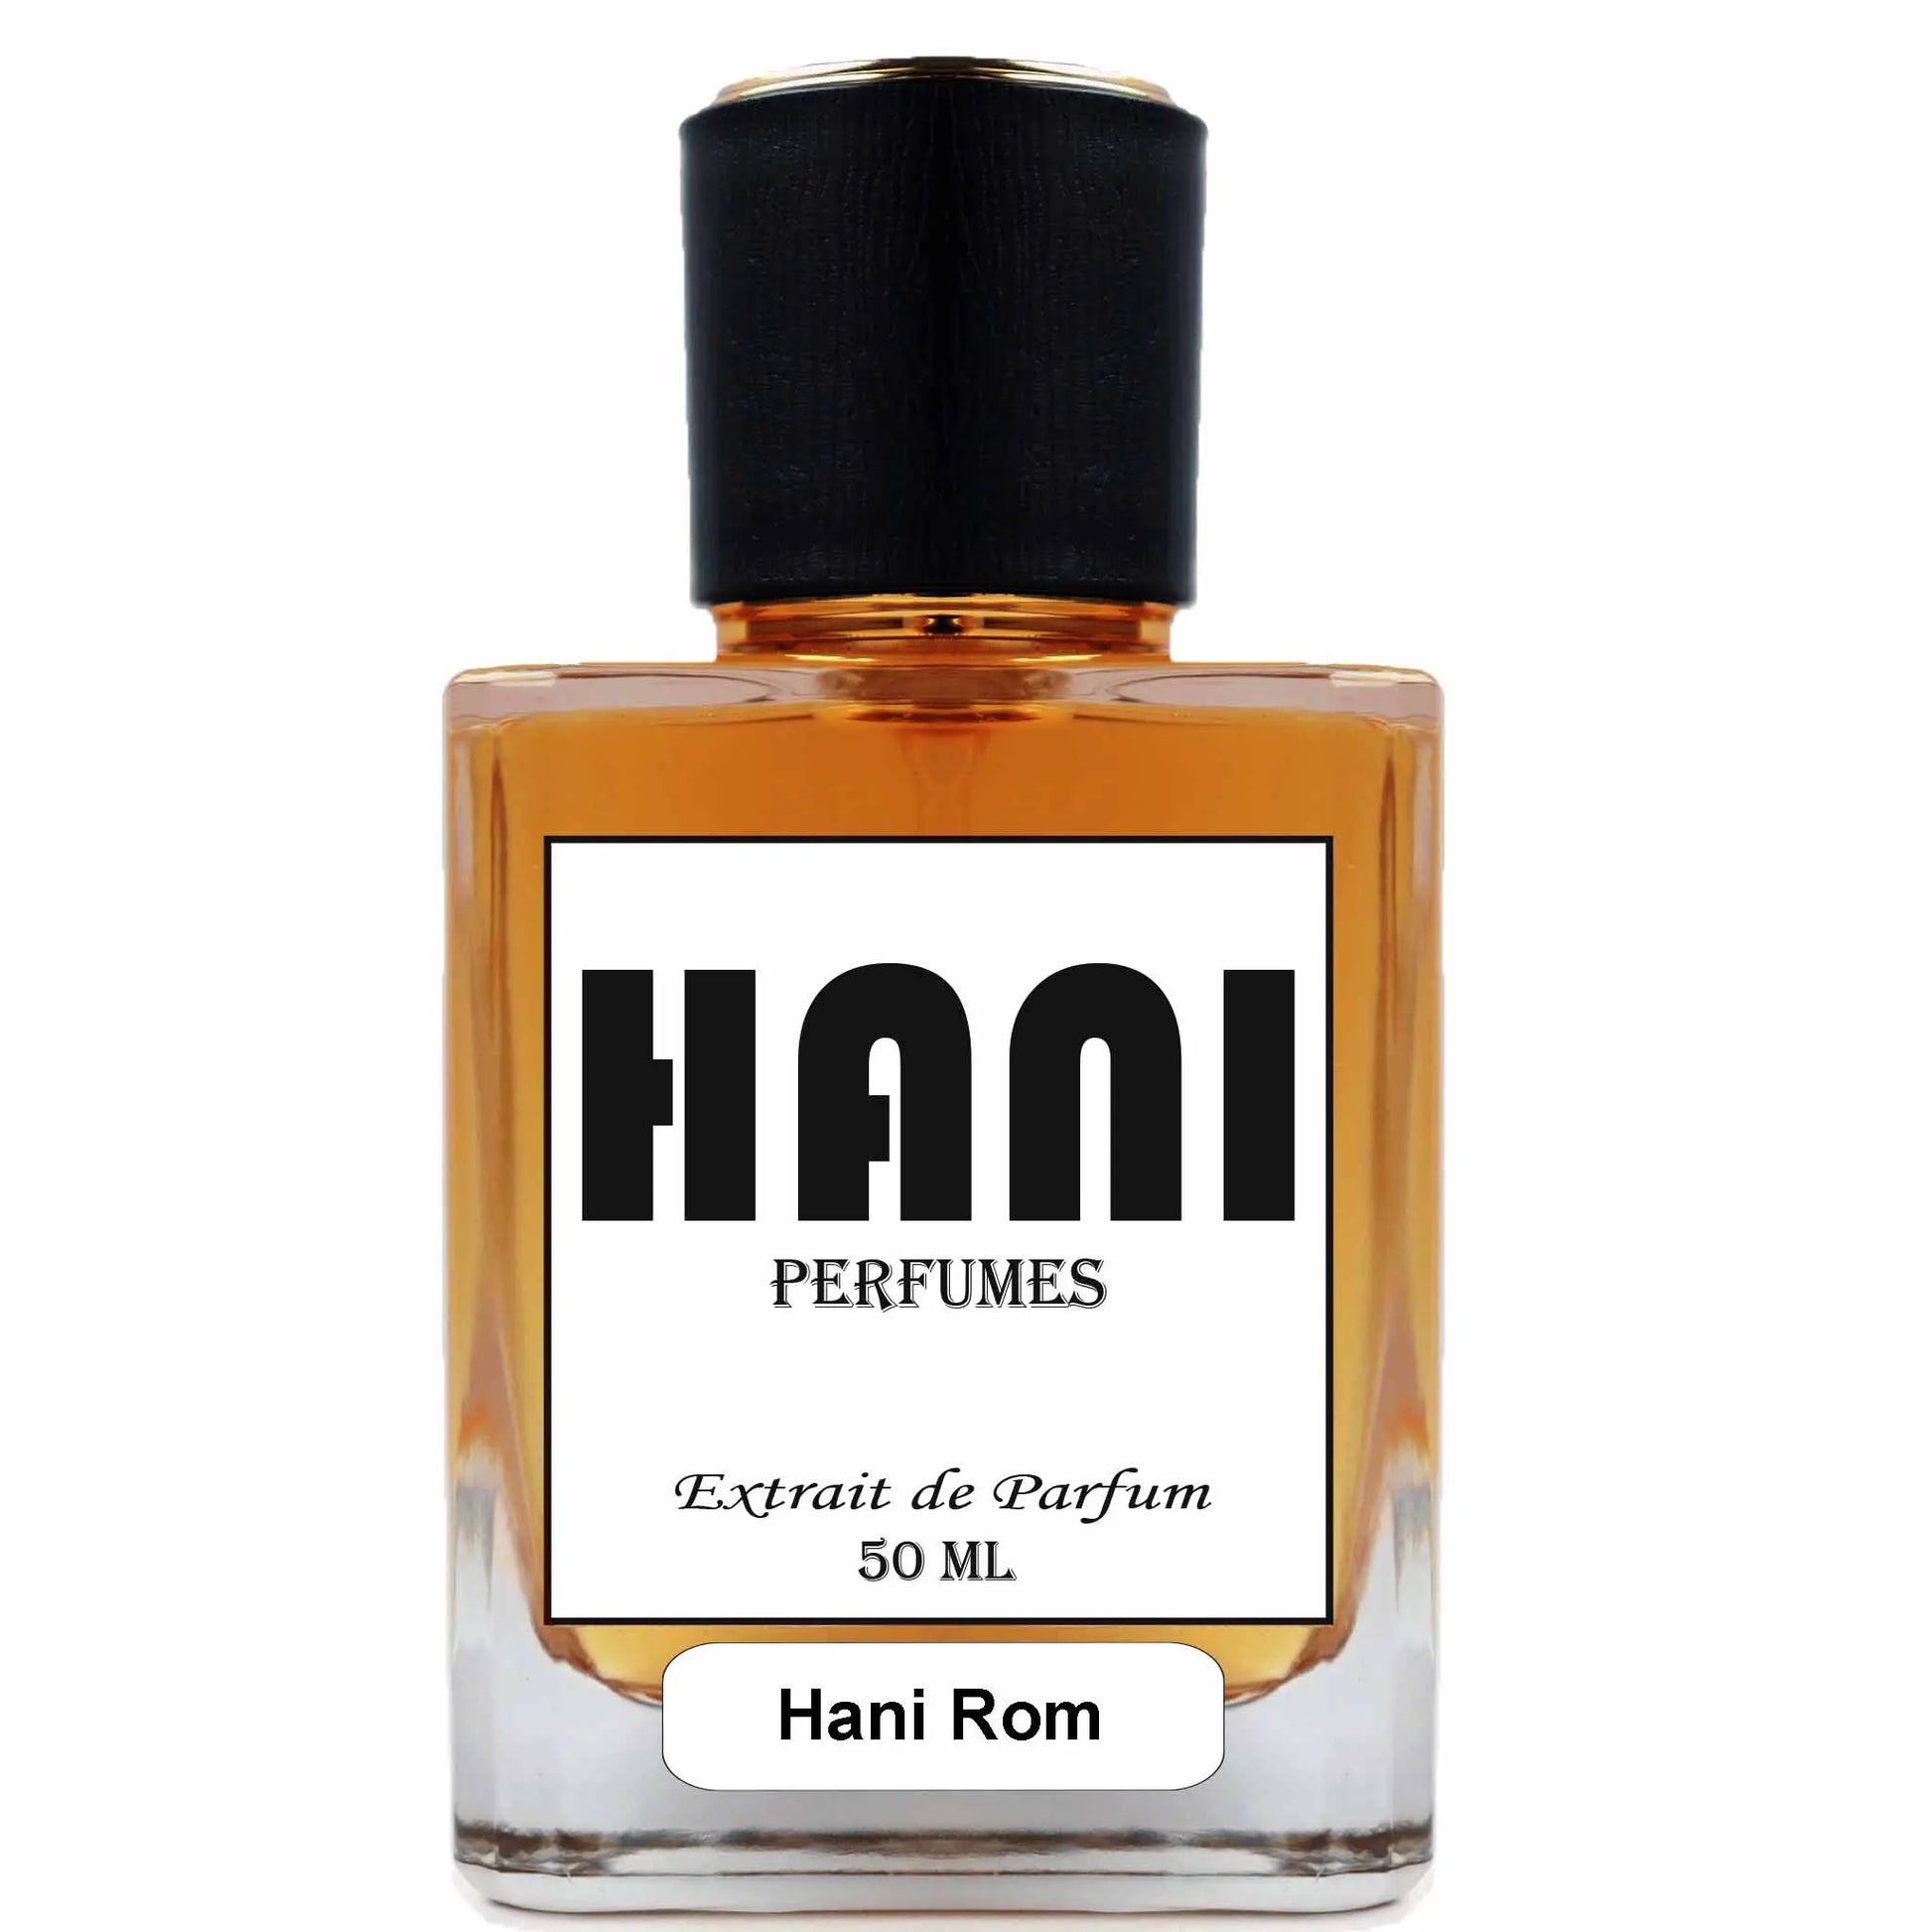 M74 Hani Rom Duftzwillinge und Parfum Dupes Hani Perfumes duftzwilling parfum dupe